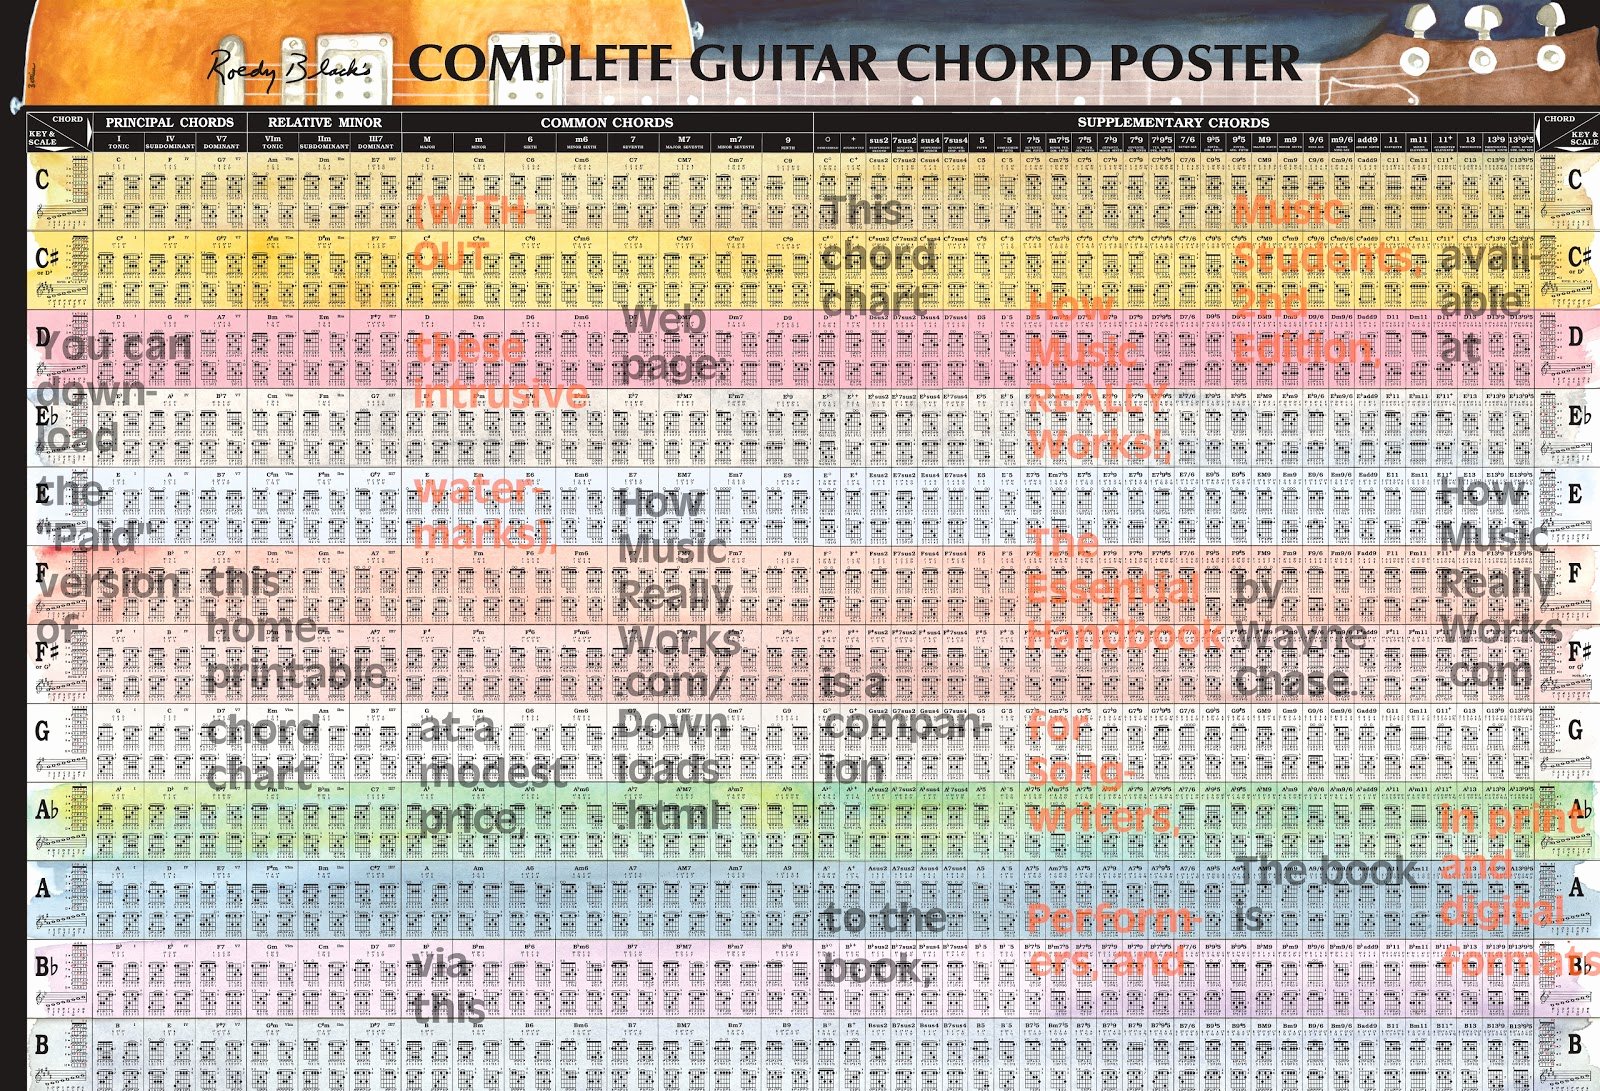 Complete Guitar Chord Chart Fresh Guitar Chord Chart Plete Guitar Chord Poster